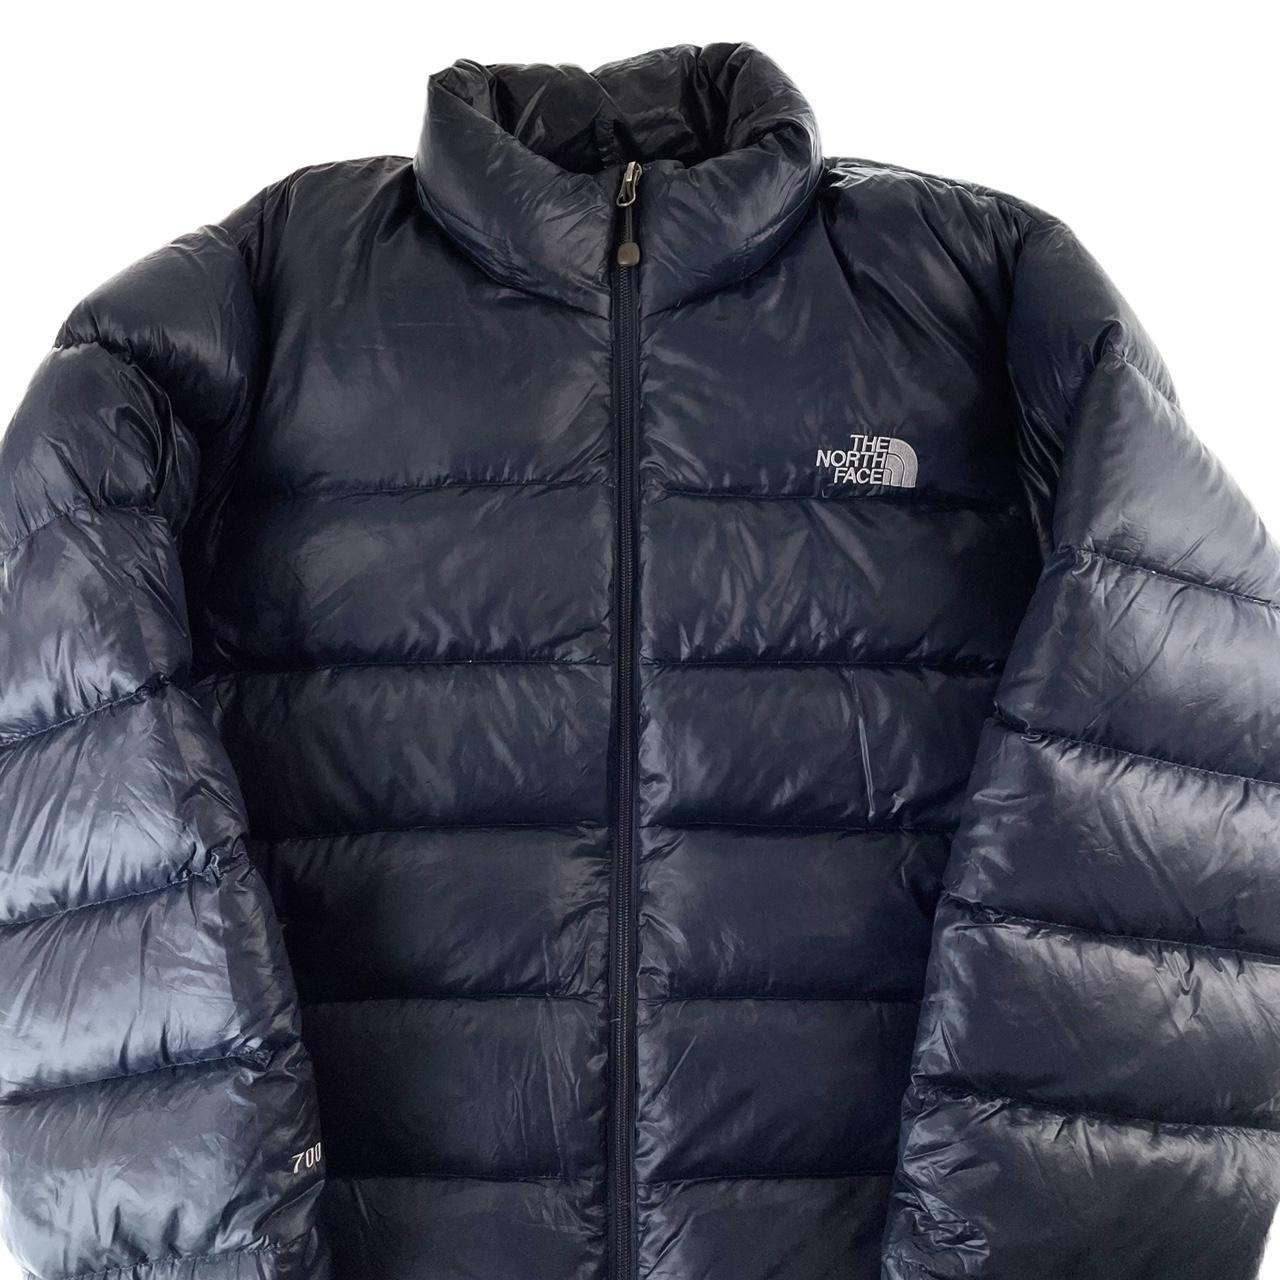 Vintage North Face goose down puffer jacket size... - Depop